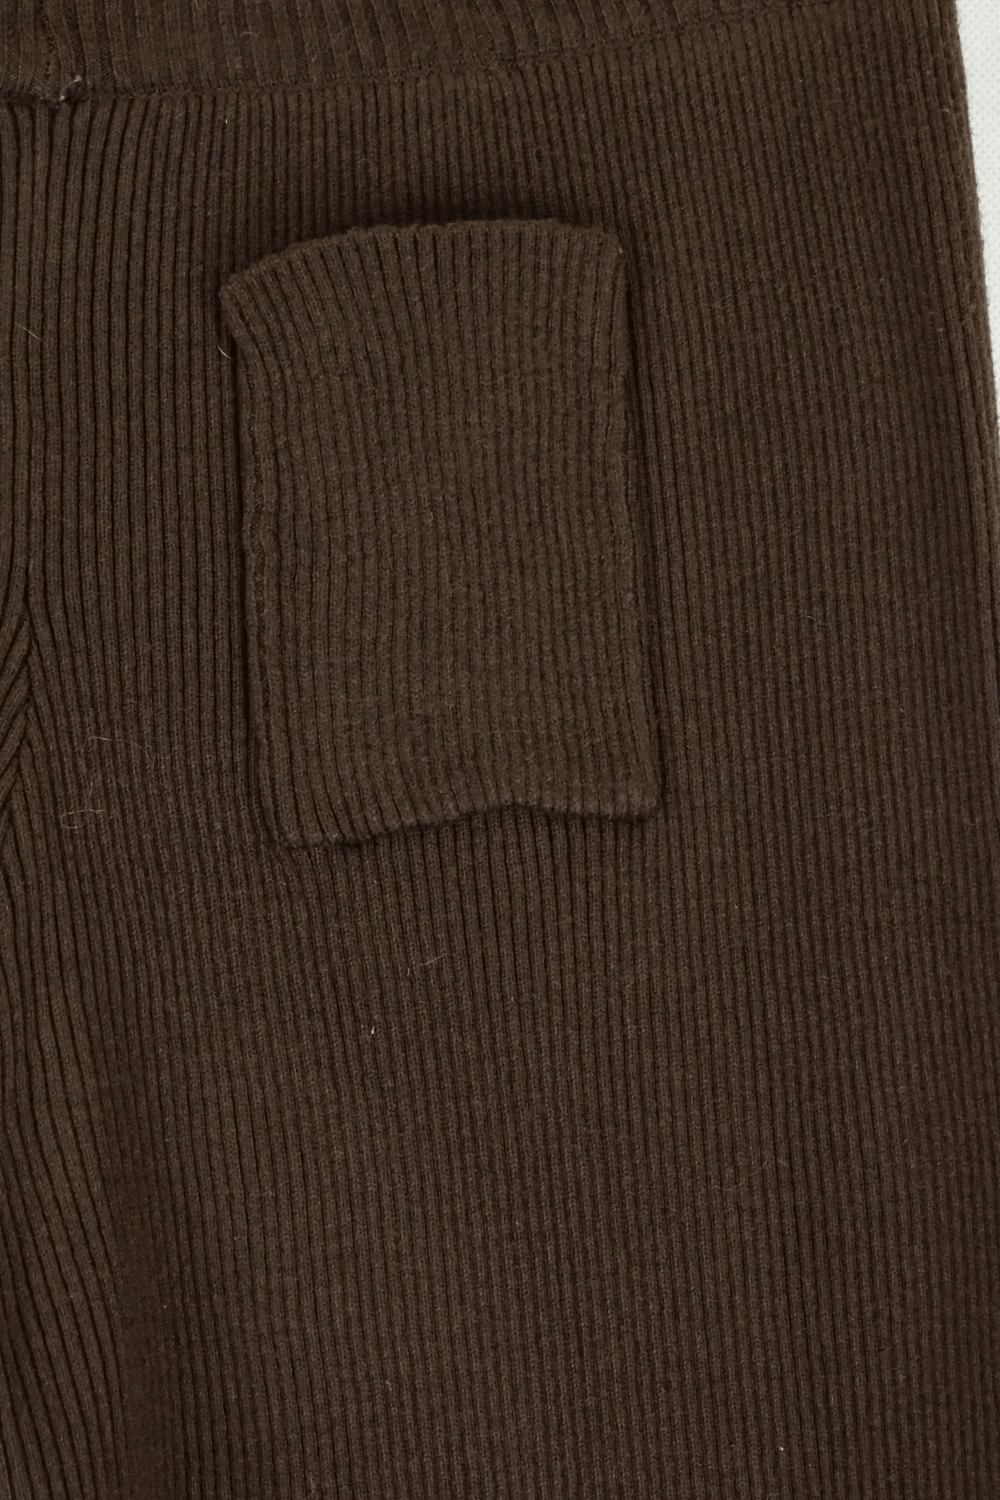 Brown Knit Pants XS/S